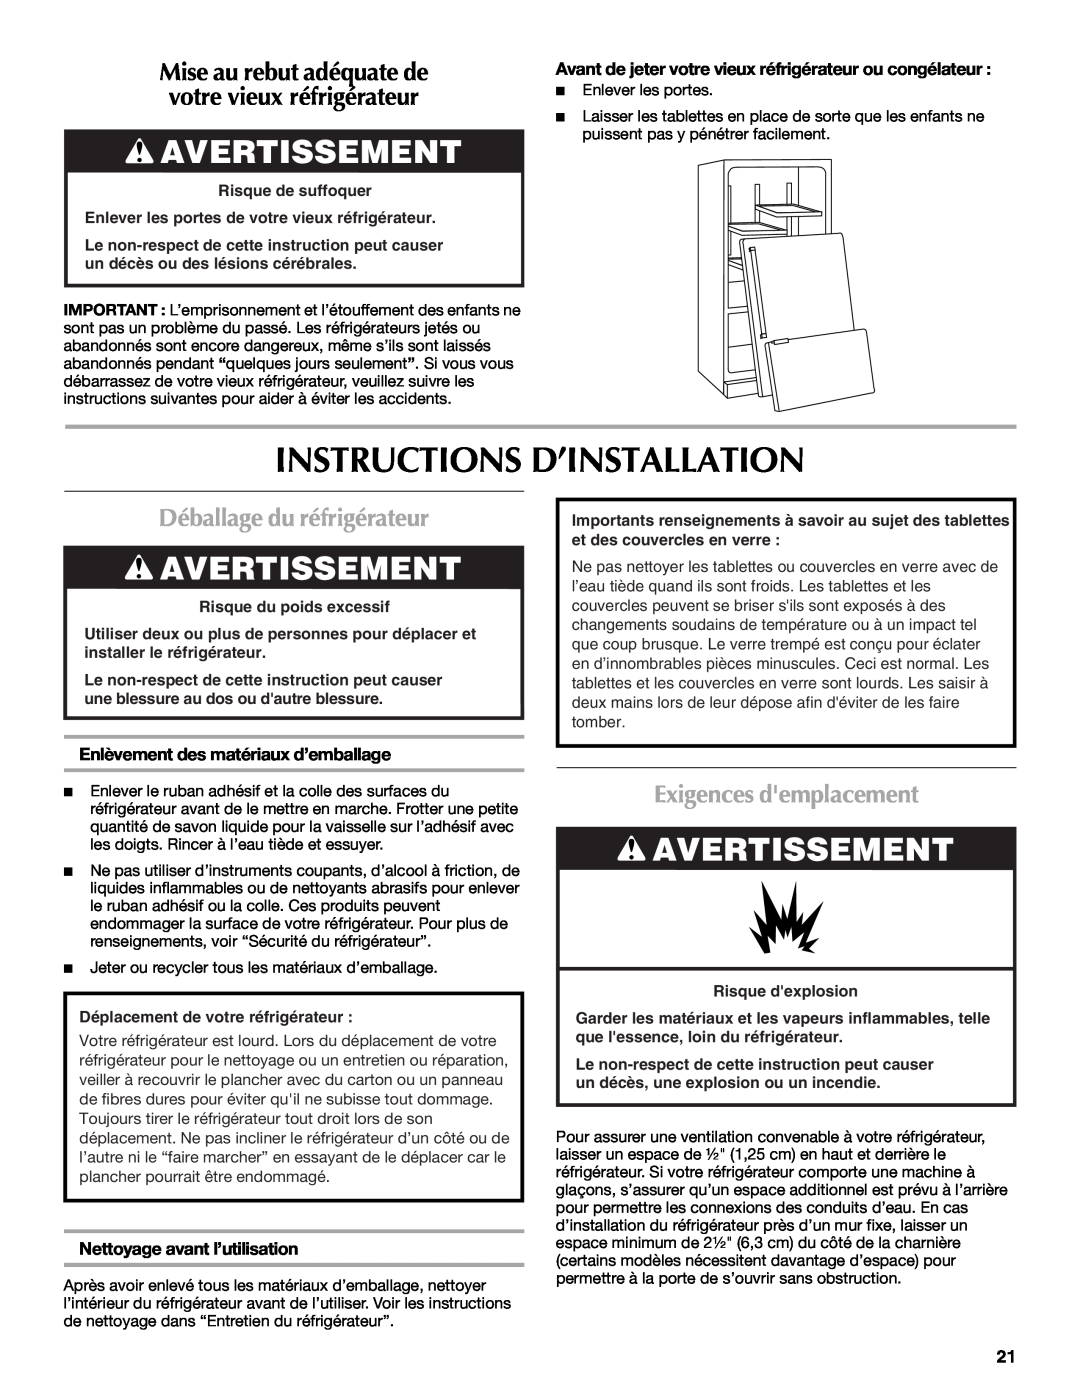 Maytag W10208790A Instructions D’Installation, Avertissement, Déballage du réfrigérateur, Exigences demplacement 